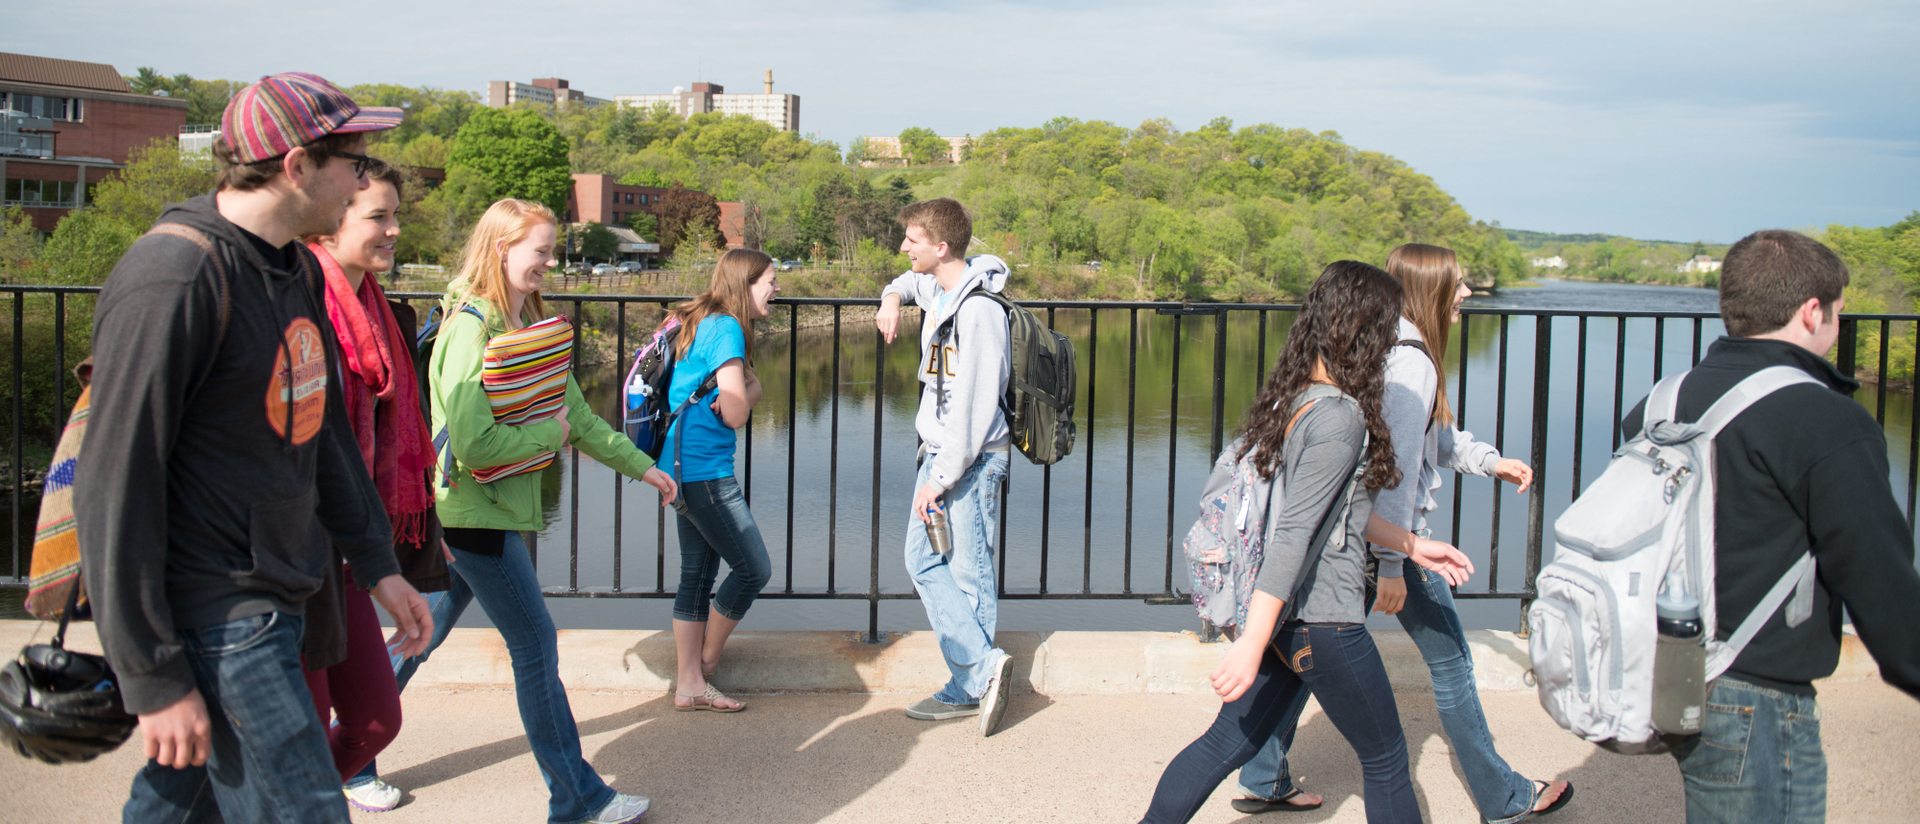 Students on campus footbridge